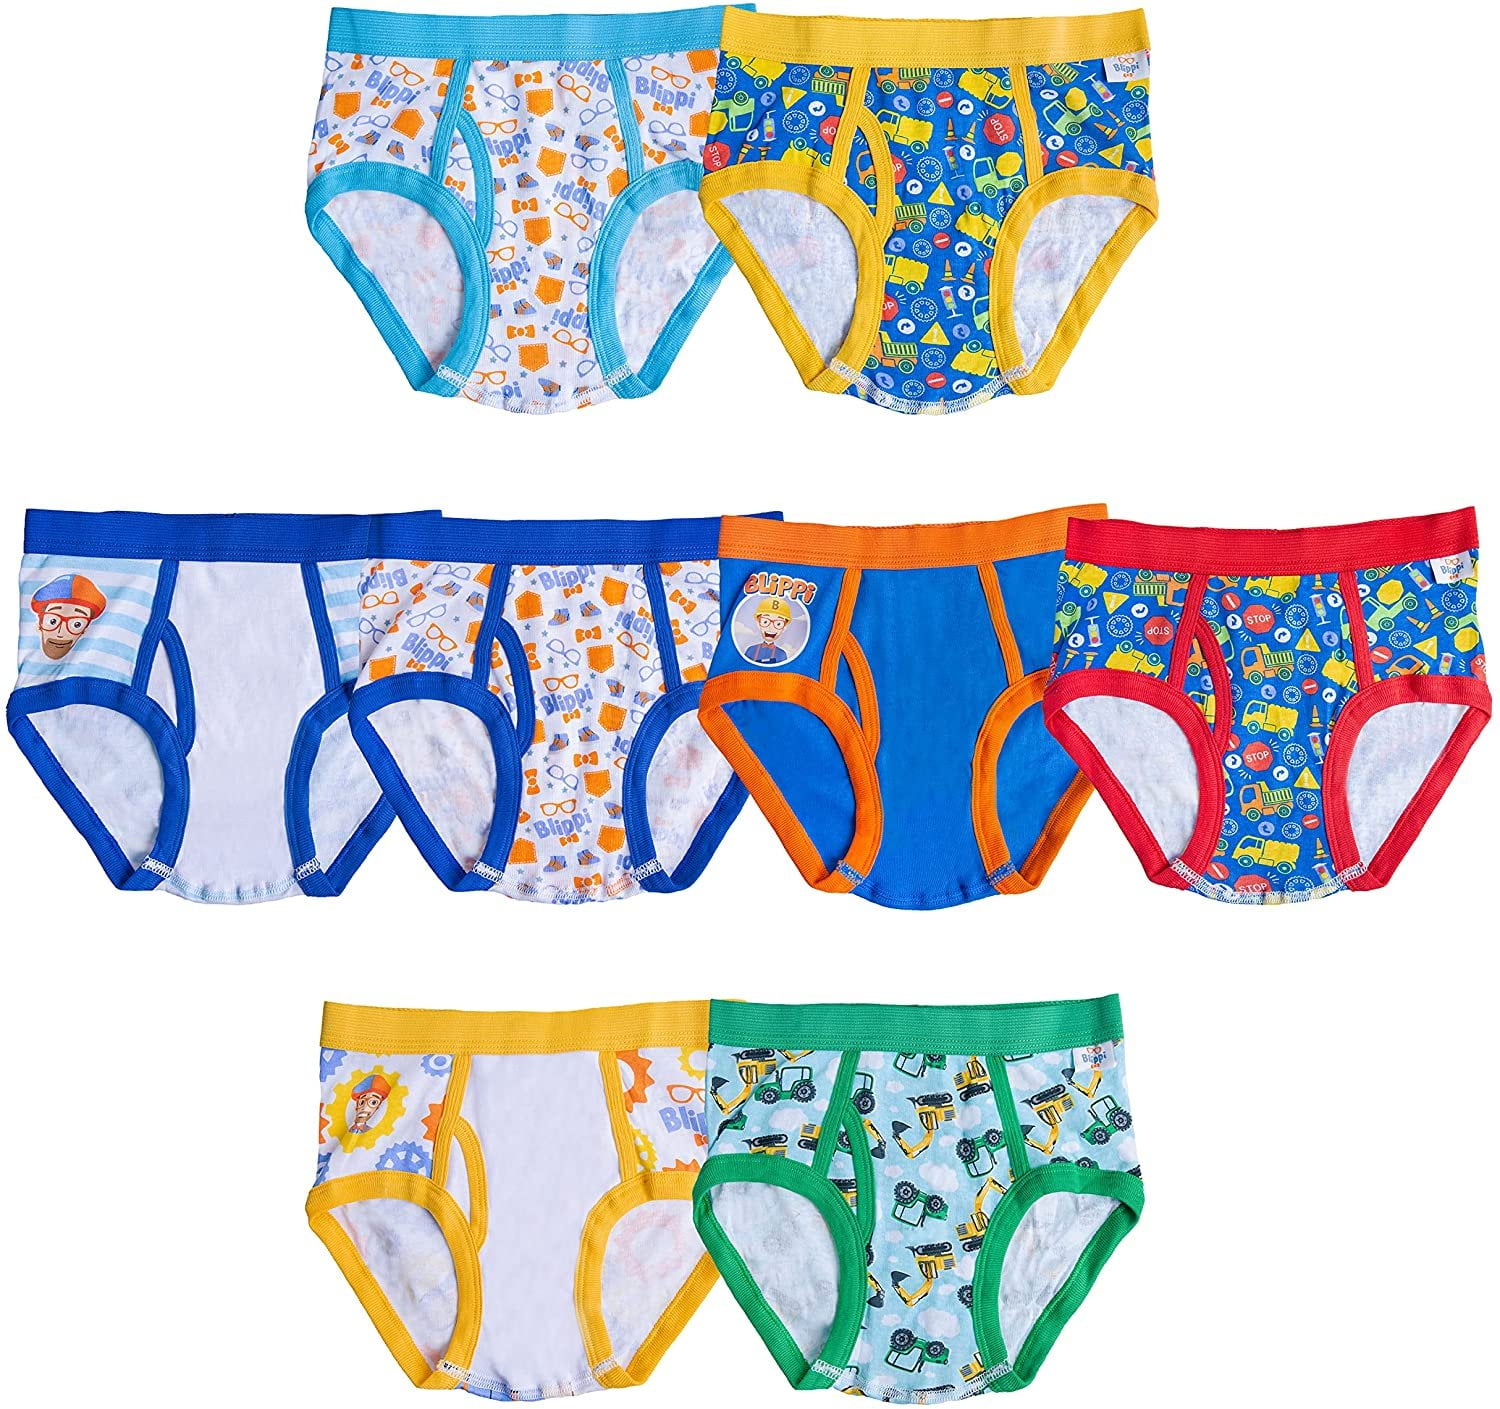 Blippi Boys Underwear - 8-Pack Cotton Toddler/Little Kid/Big Kid Size ...